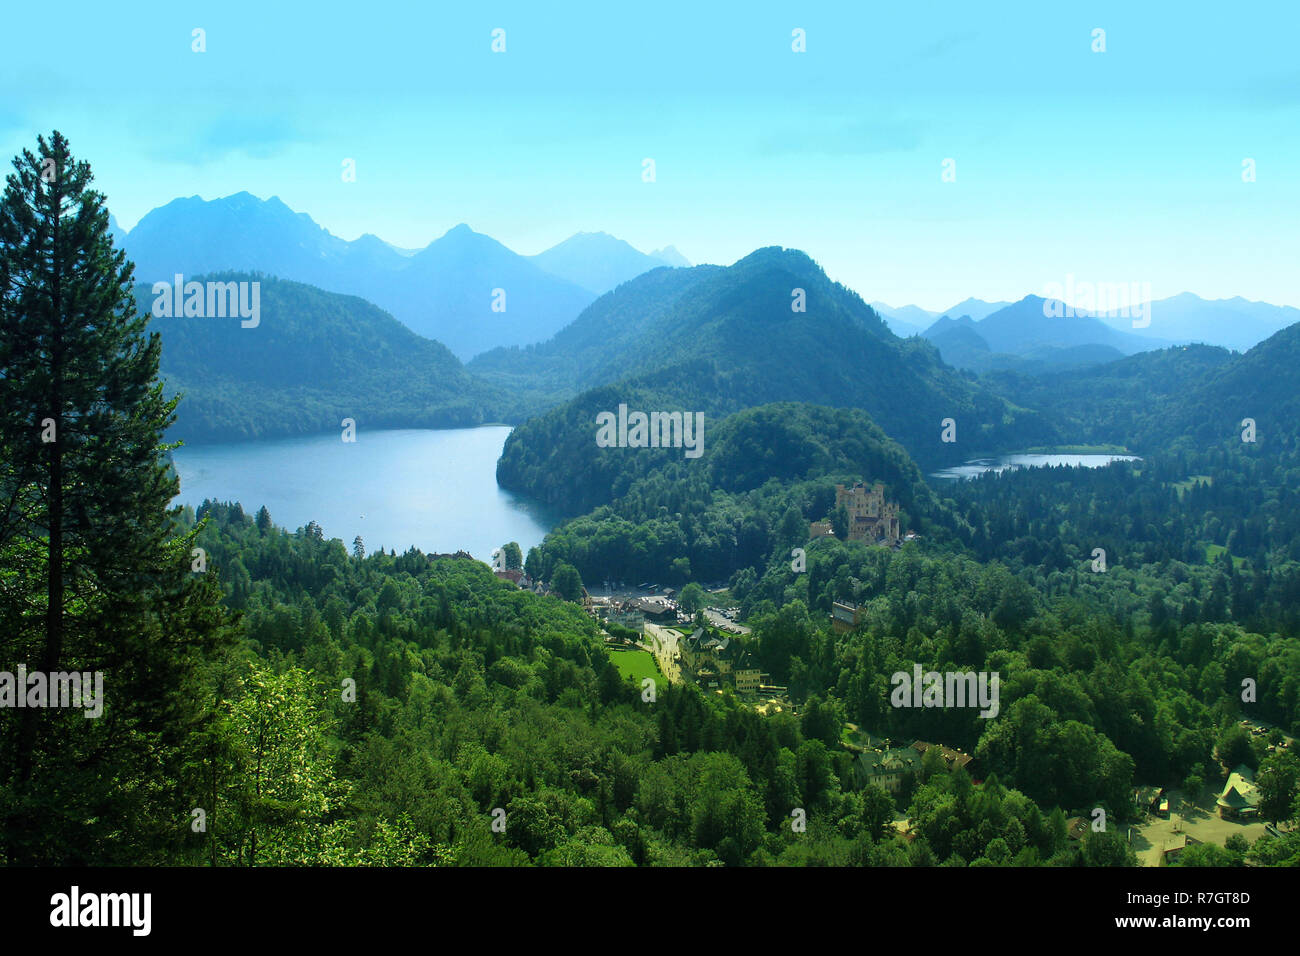 Alpine Landschaft mit Bergen in einem blauen Dunst, ruhigen Mirror Lake und alte Burg in einem Abstand Stockfoto